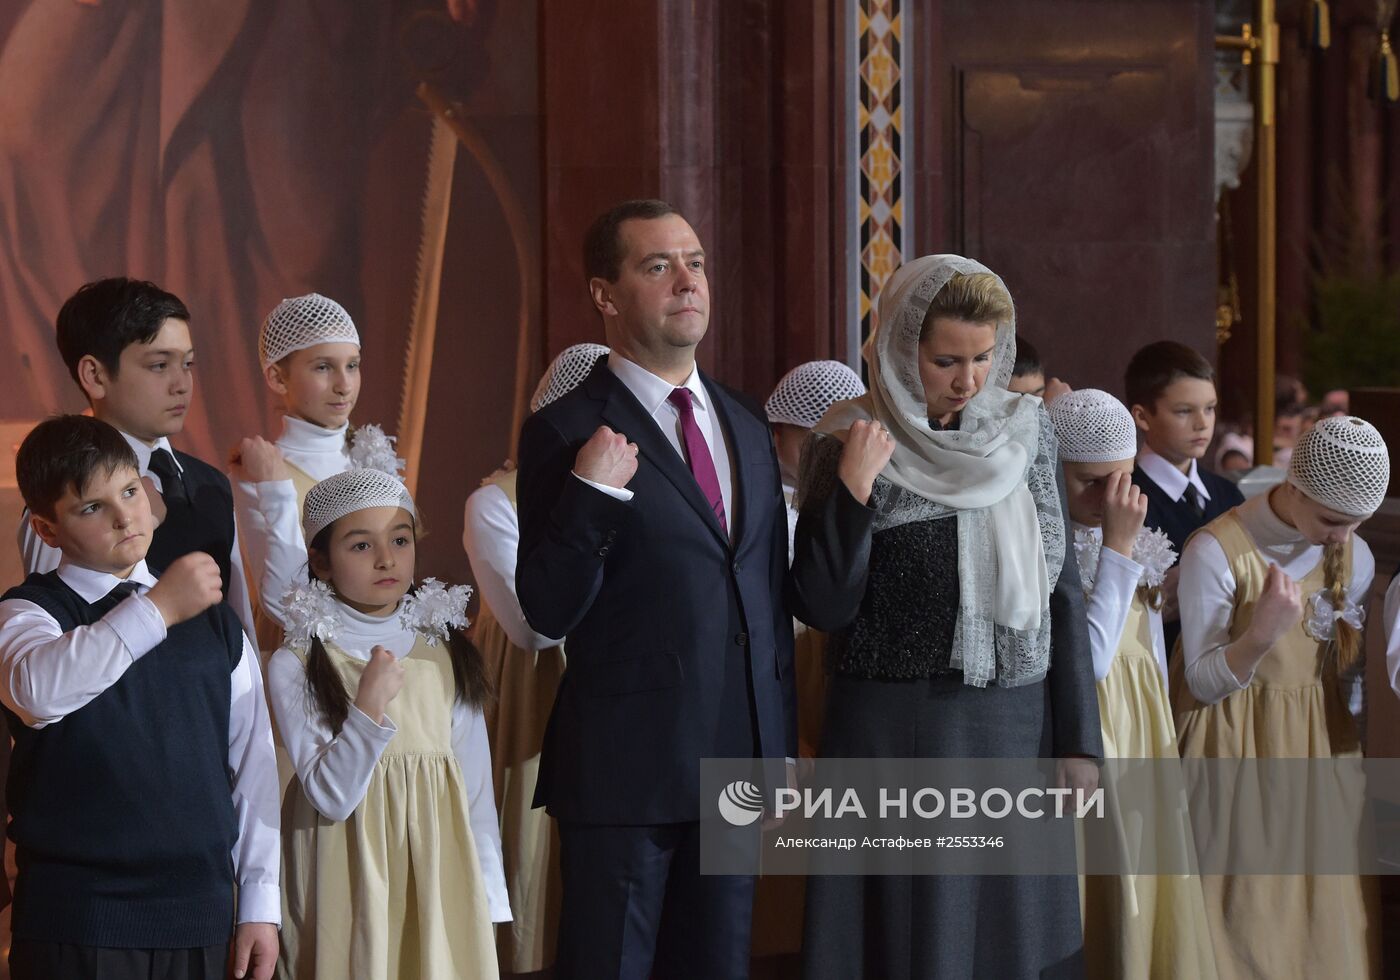 Премьер-министр РФ Д.Медведев посетил Рождественское богослужение в храме Христа Спасителя